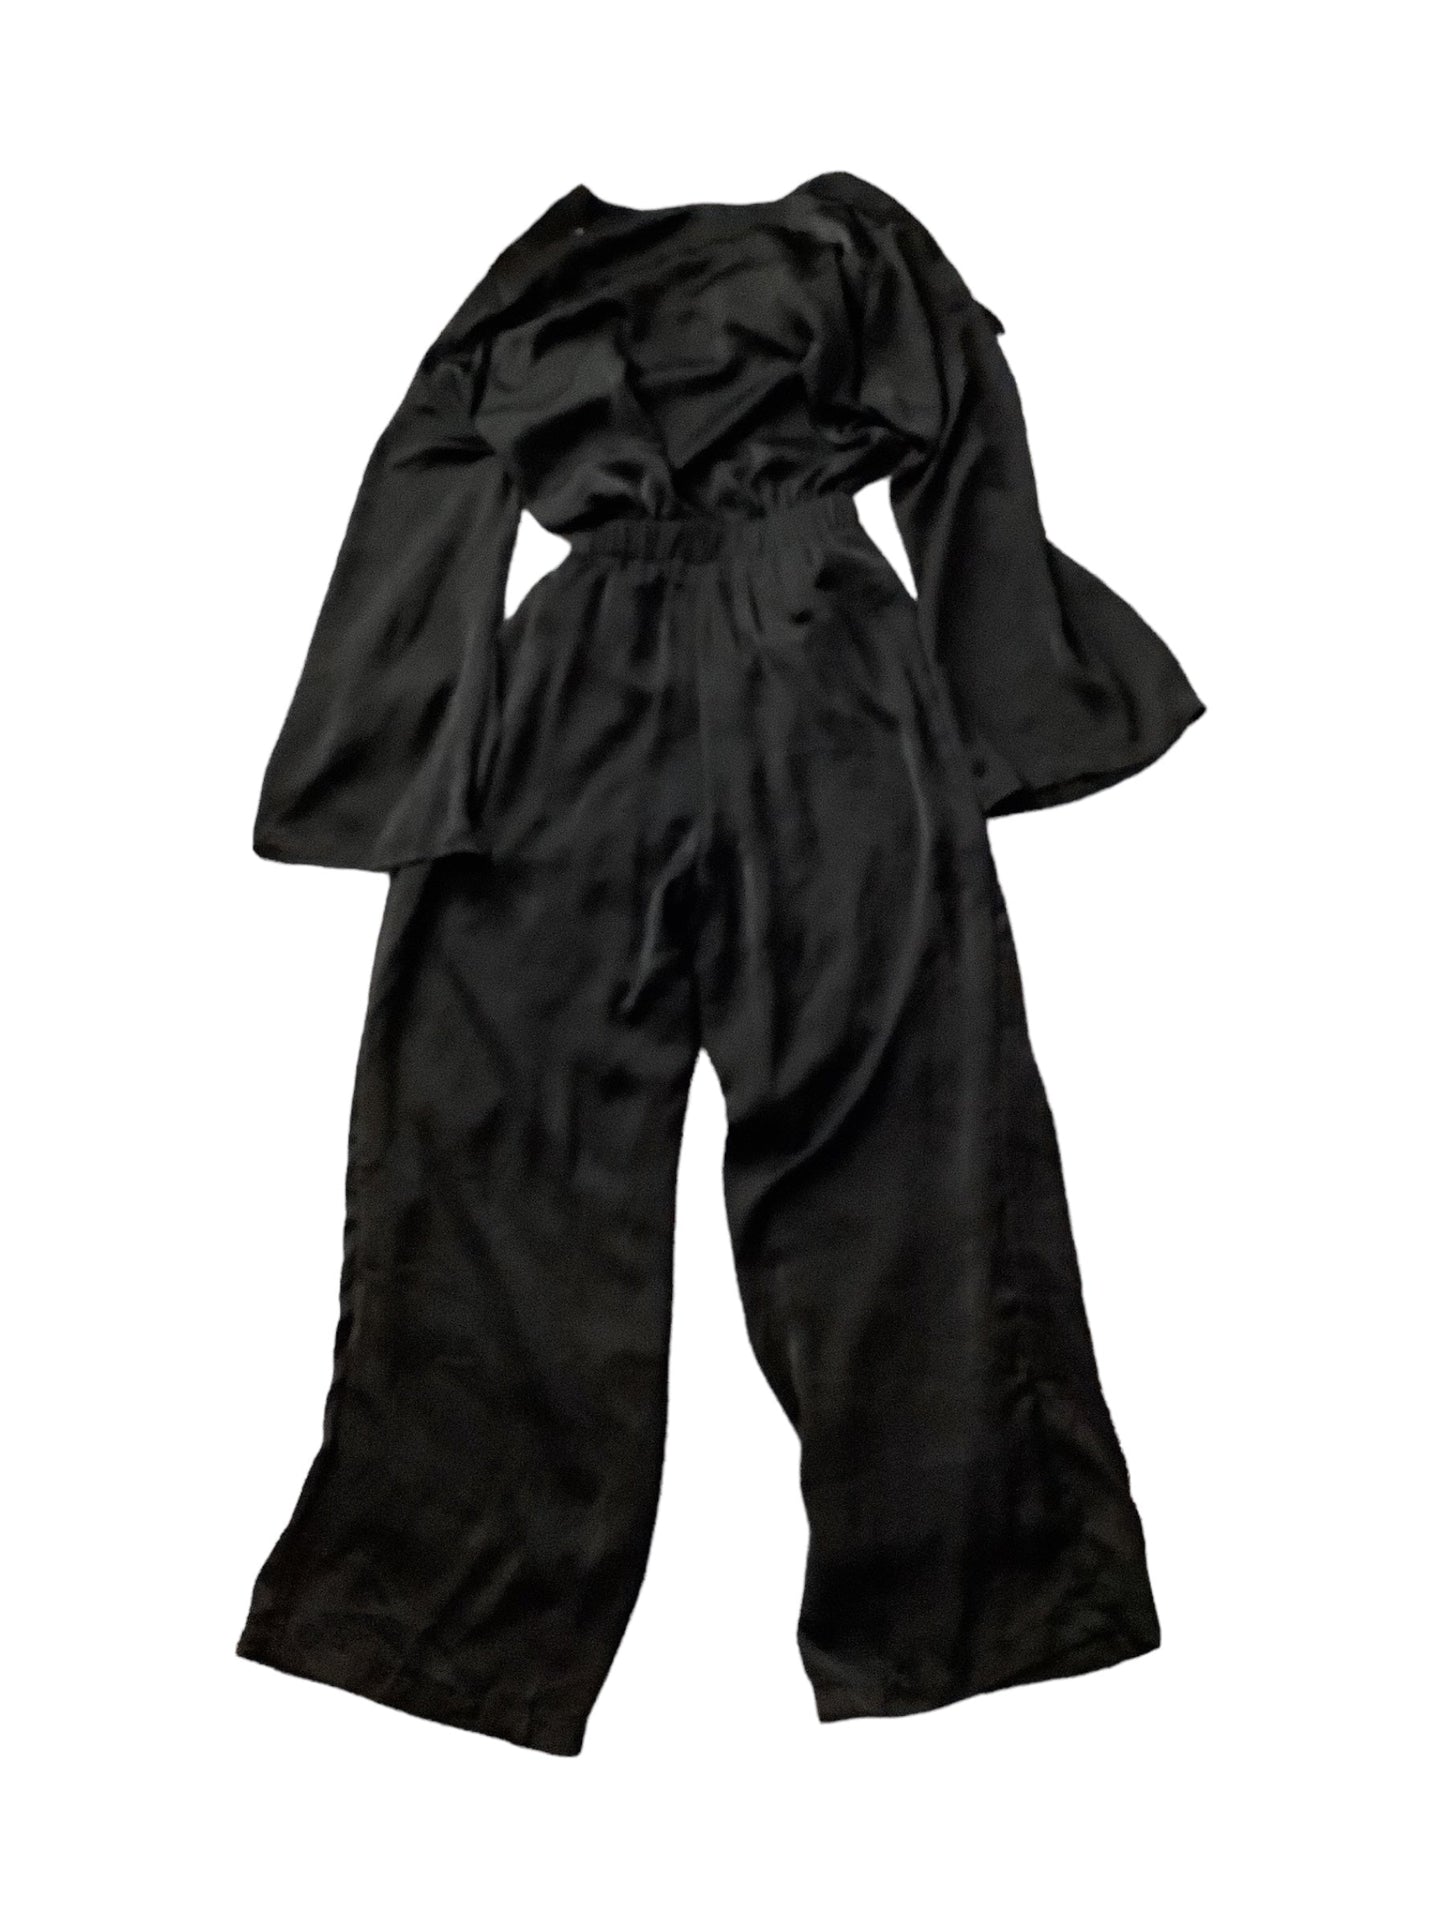 Black Jumpsuit Clothes Mentor, Size 4